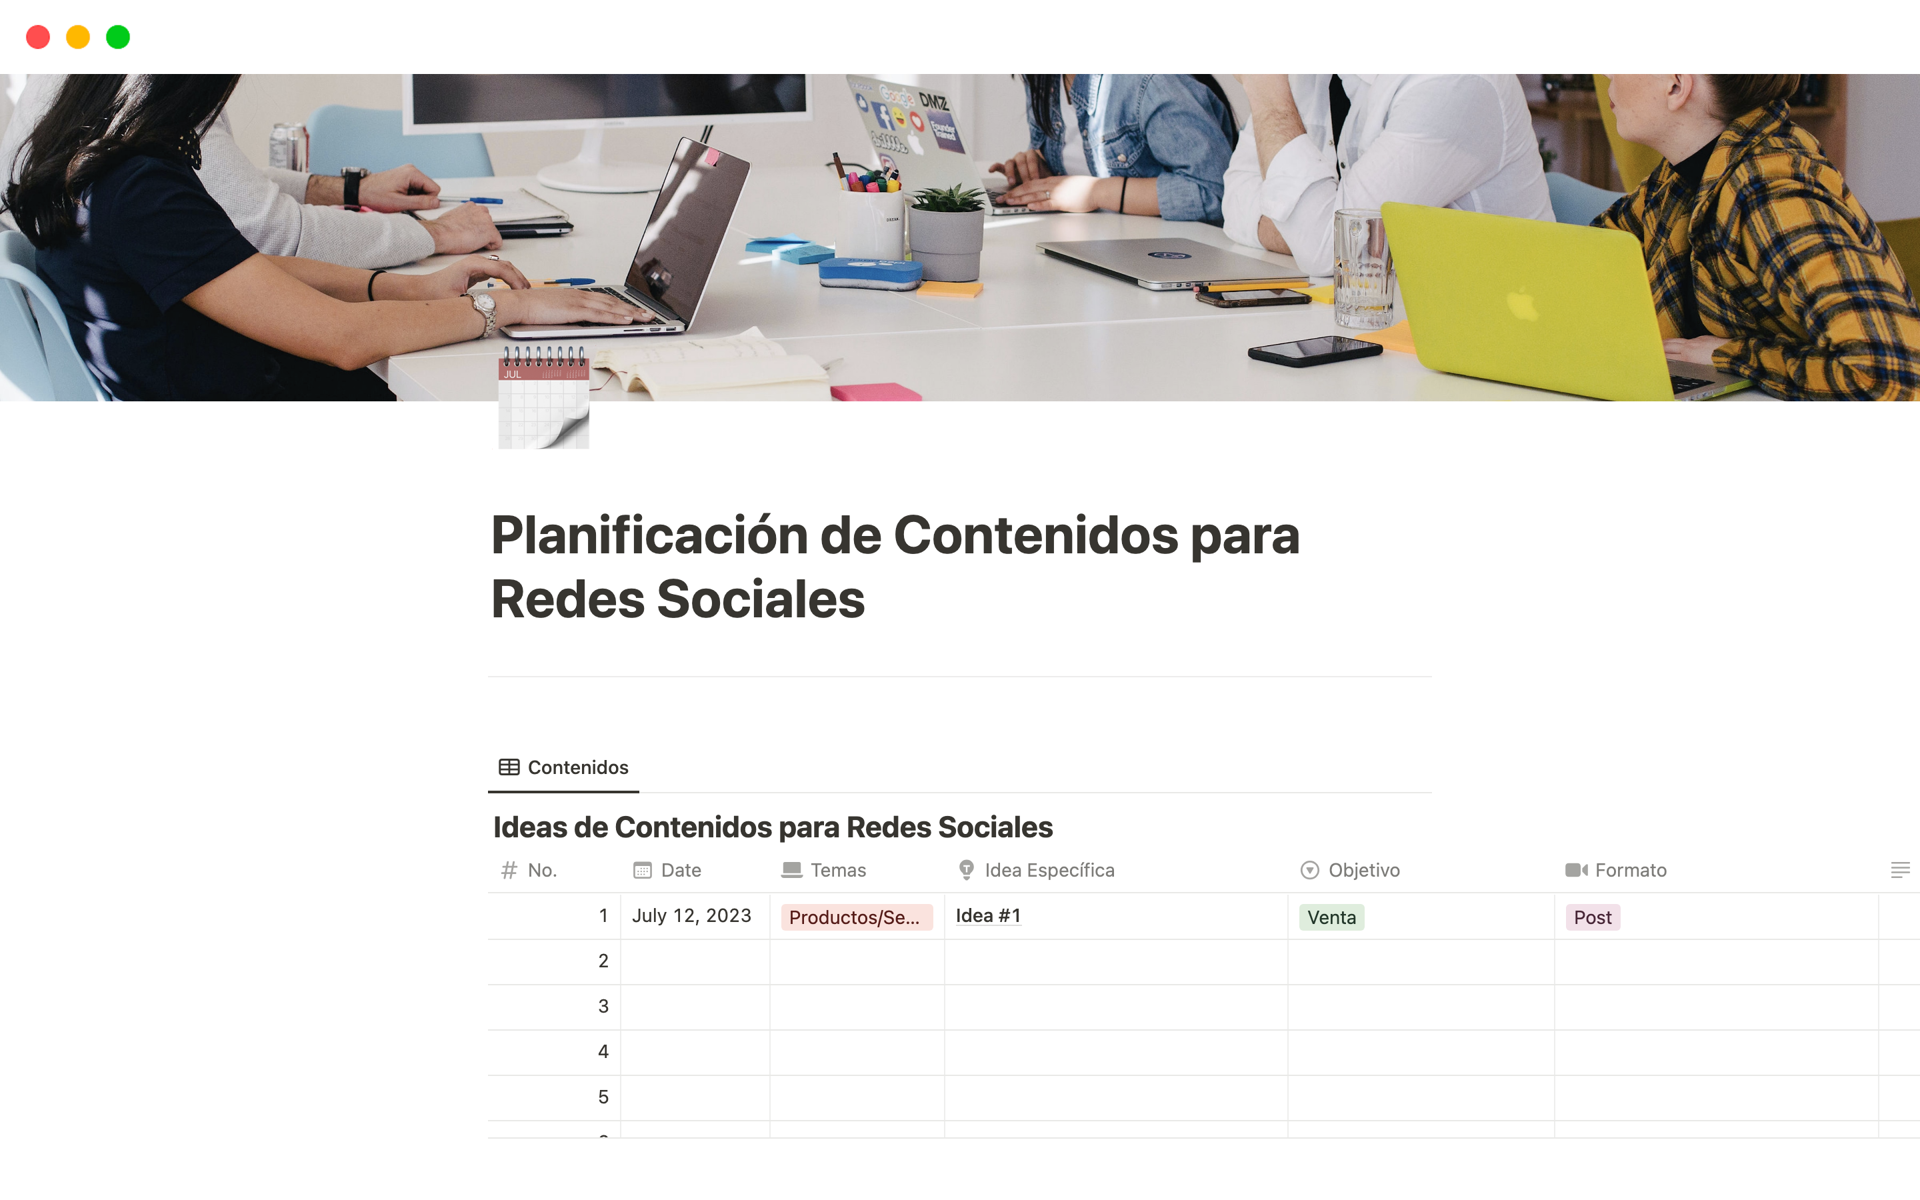 A template preview for Planificación de Contenidos para Redes Sociales